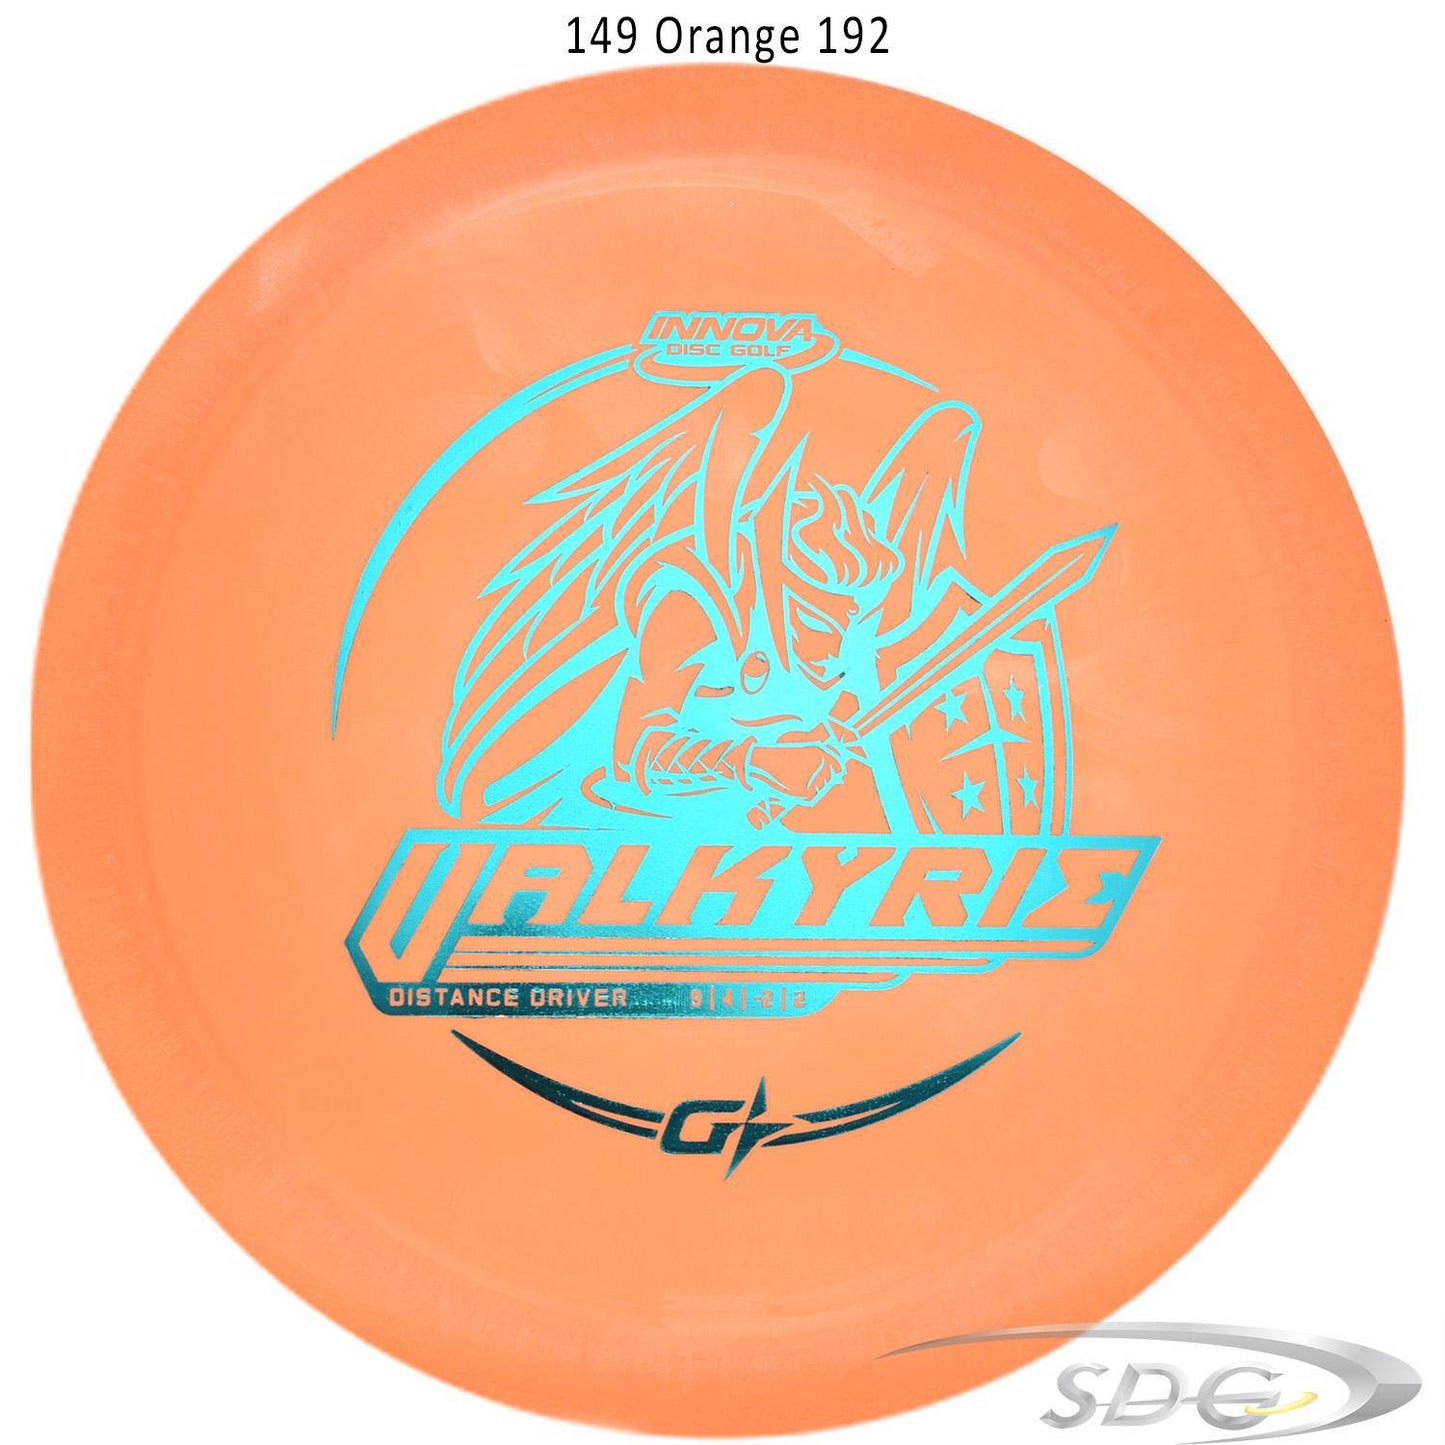 innova-gstar-valkyrie-disc-gold-distance-driver 149 Orange 192 